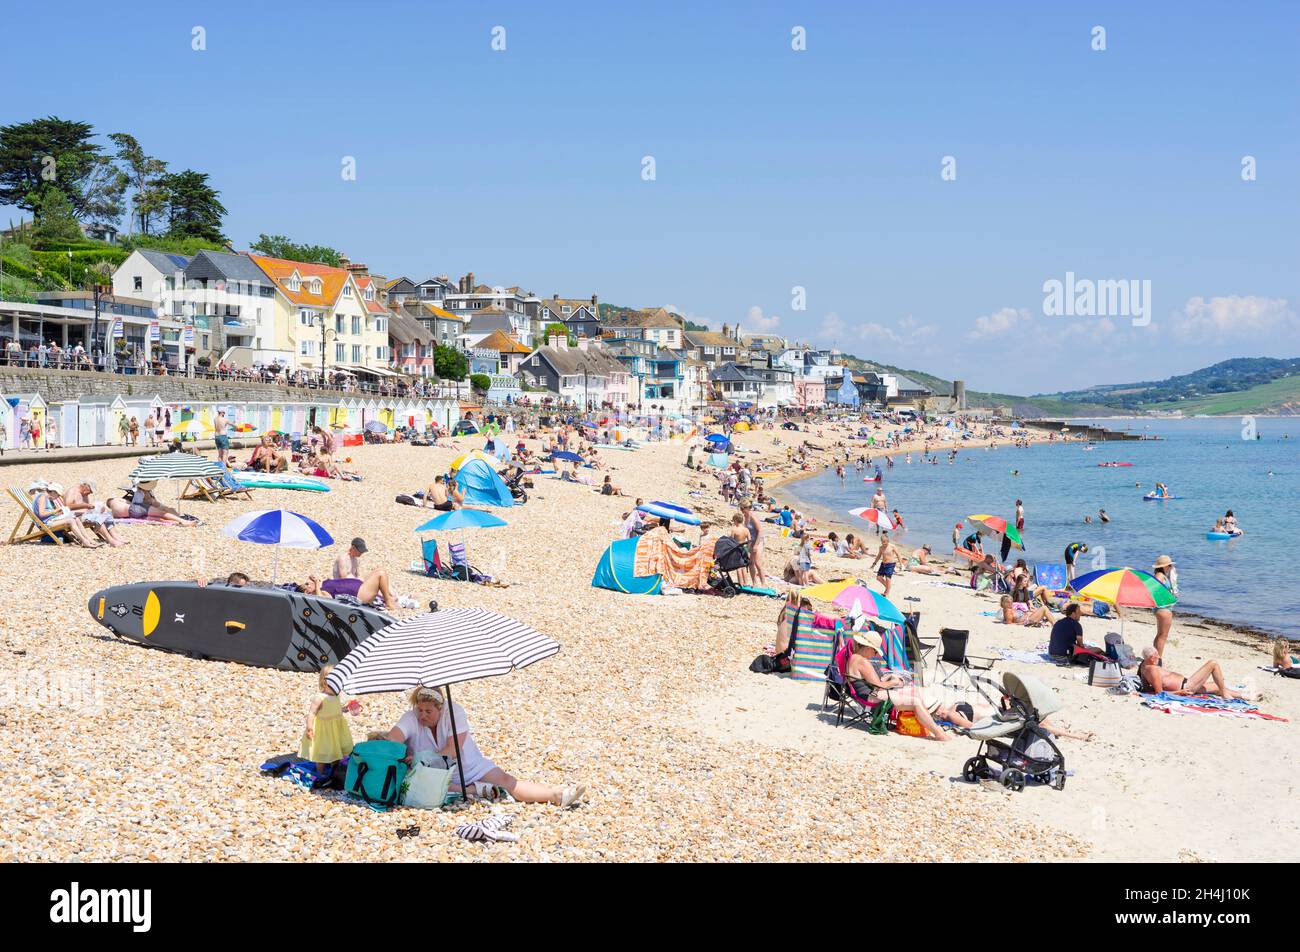 Famiglie sulla spiaggia con pop up tende sdraio ombrelloni e paddle board sulla spiaggia di sabbia a Lyme Regis Dorset Inghilterra GB Europa Foto Stock